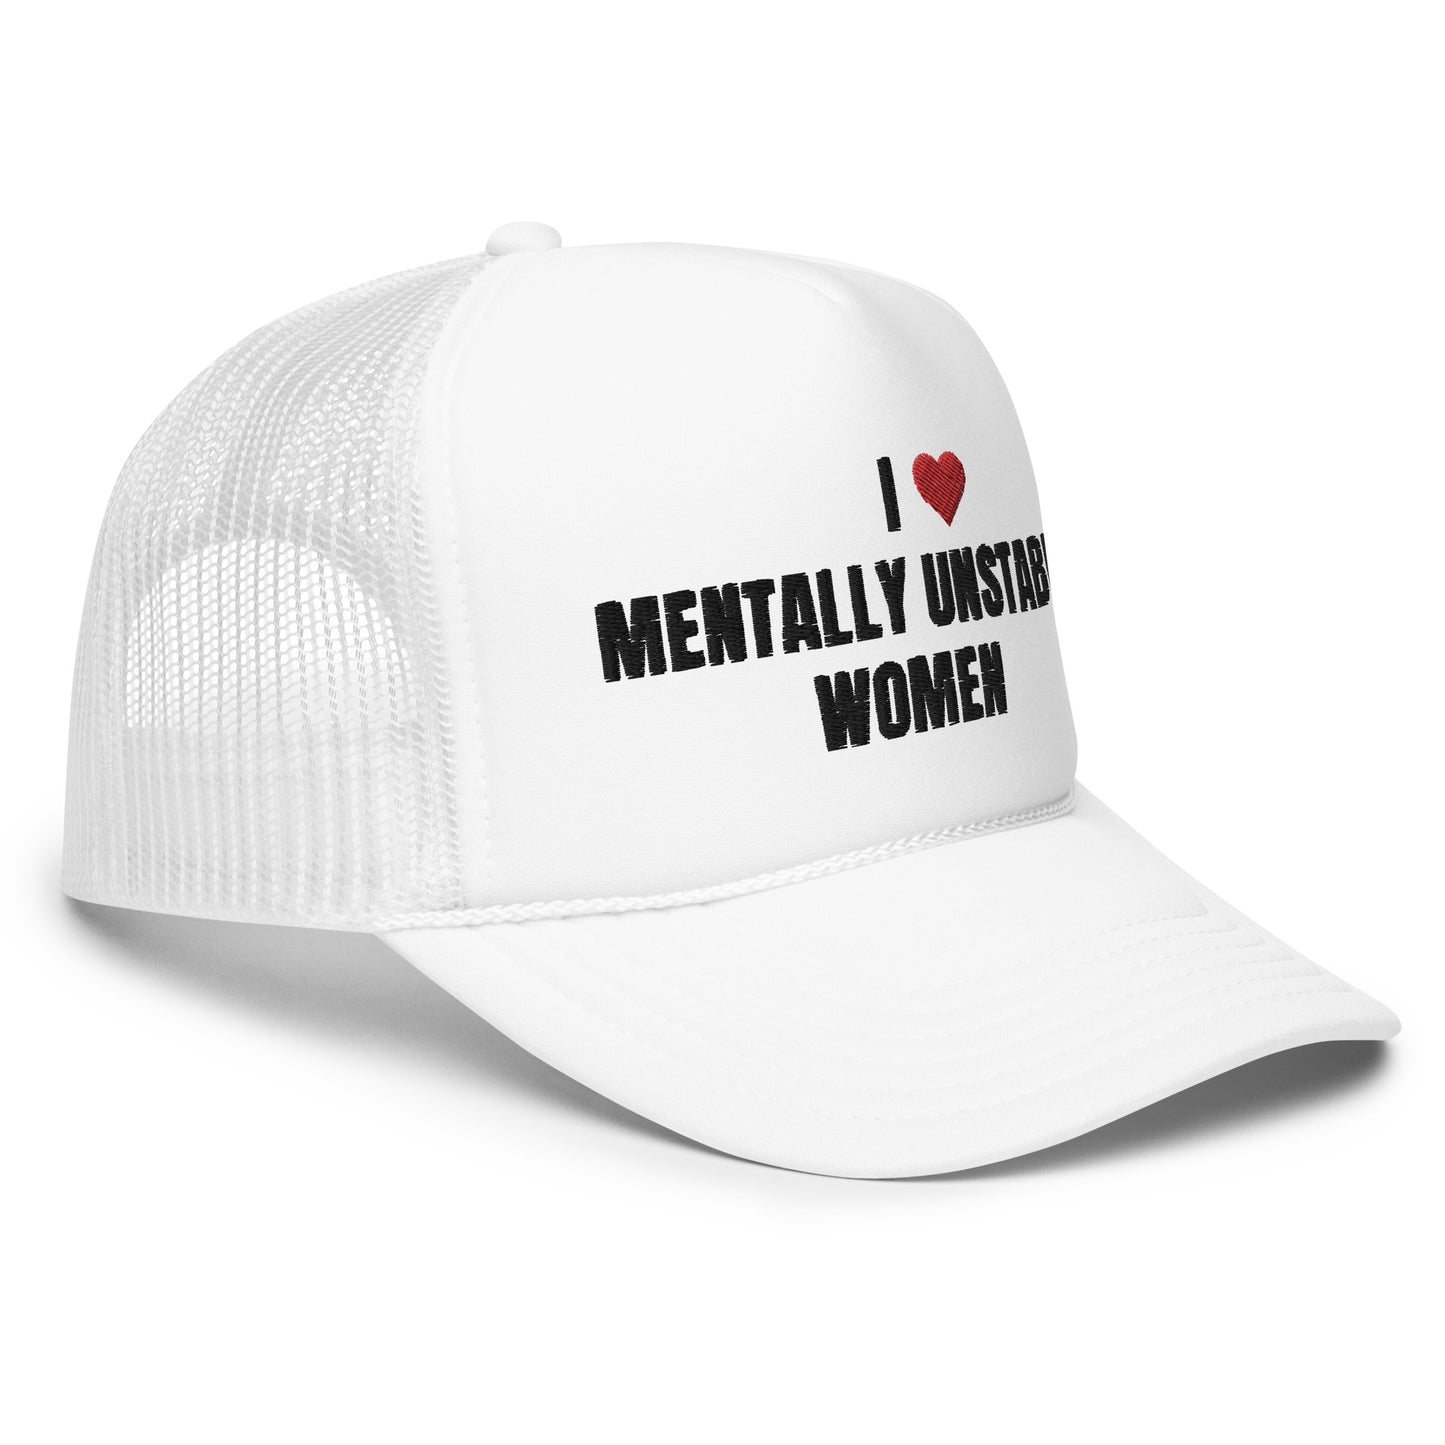 Mentally Unstable Women Foam Trucker Hat